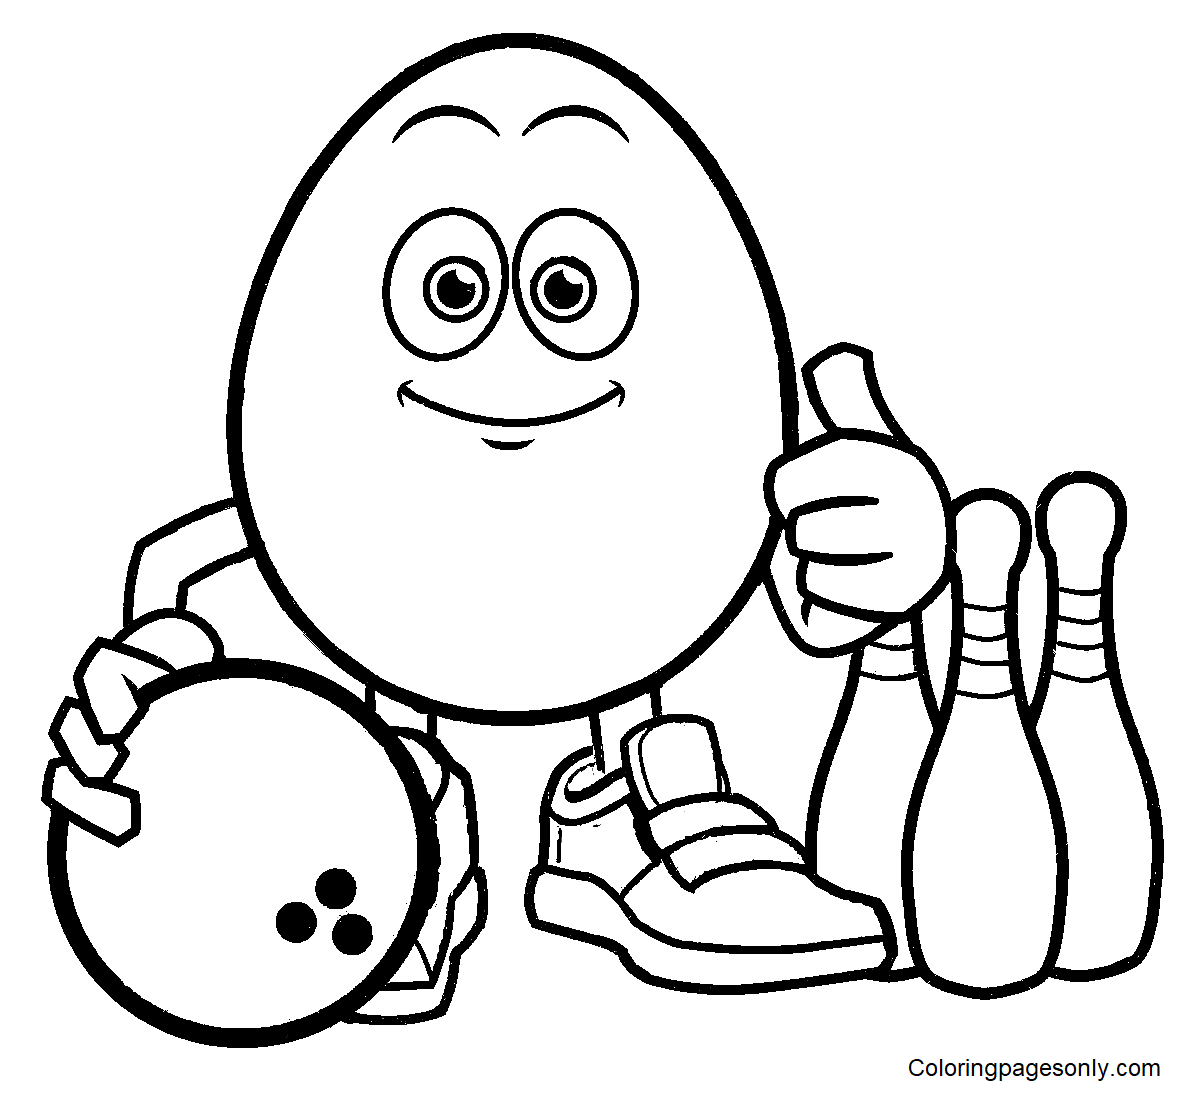 Раскраска Яйцо играет в боулинг